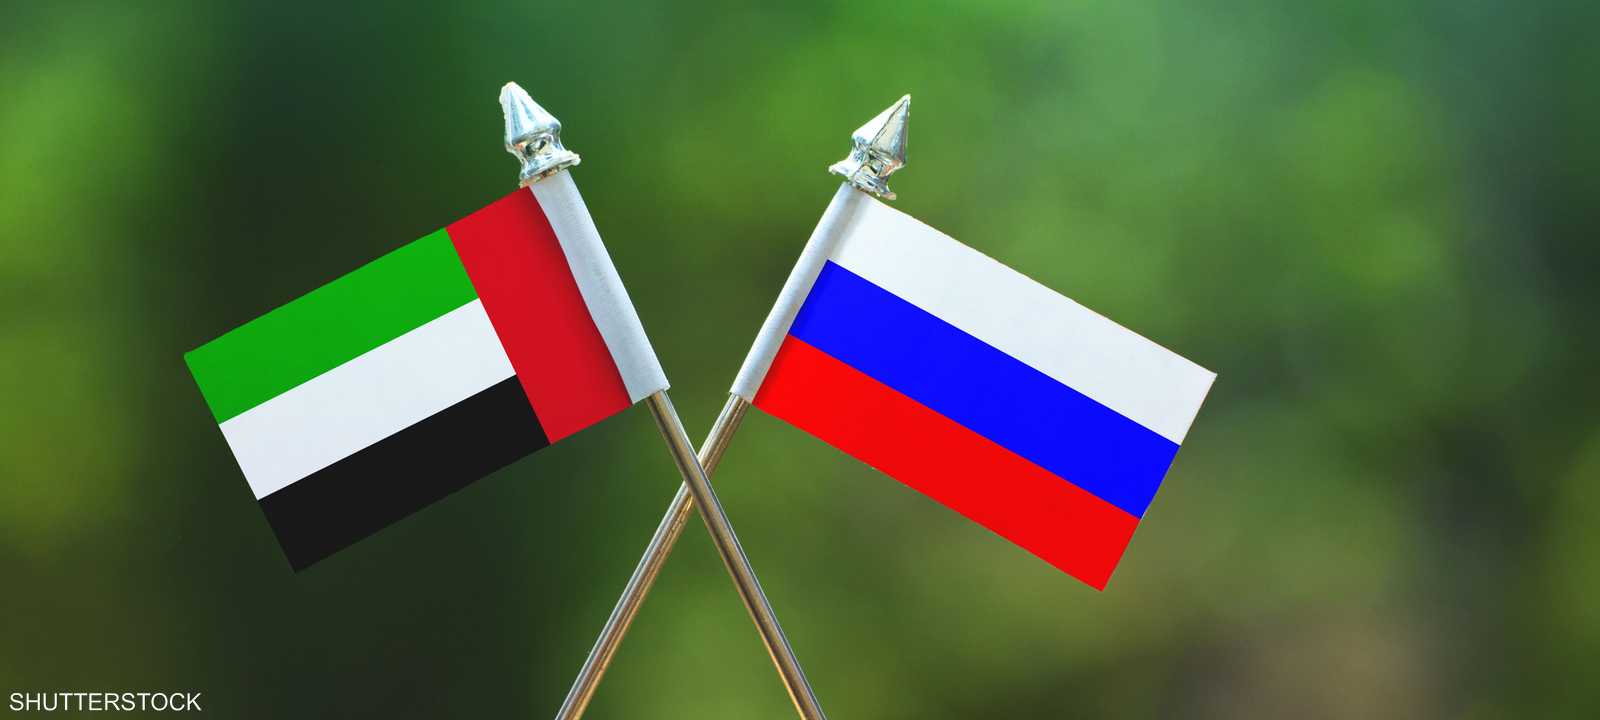 العلمان الإماراتي والروسي